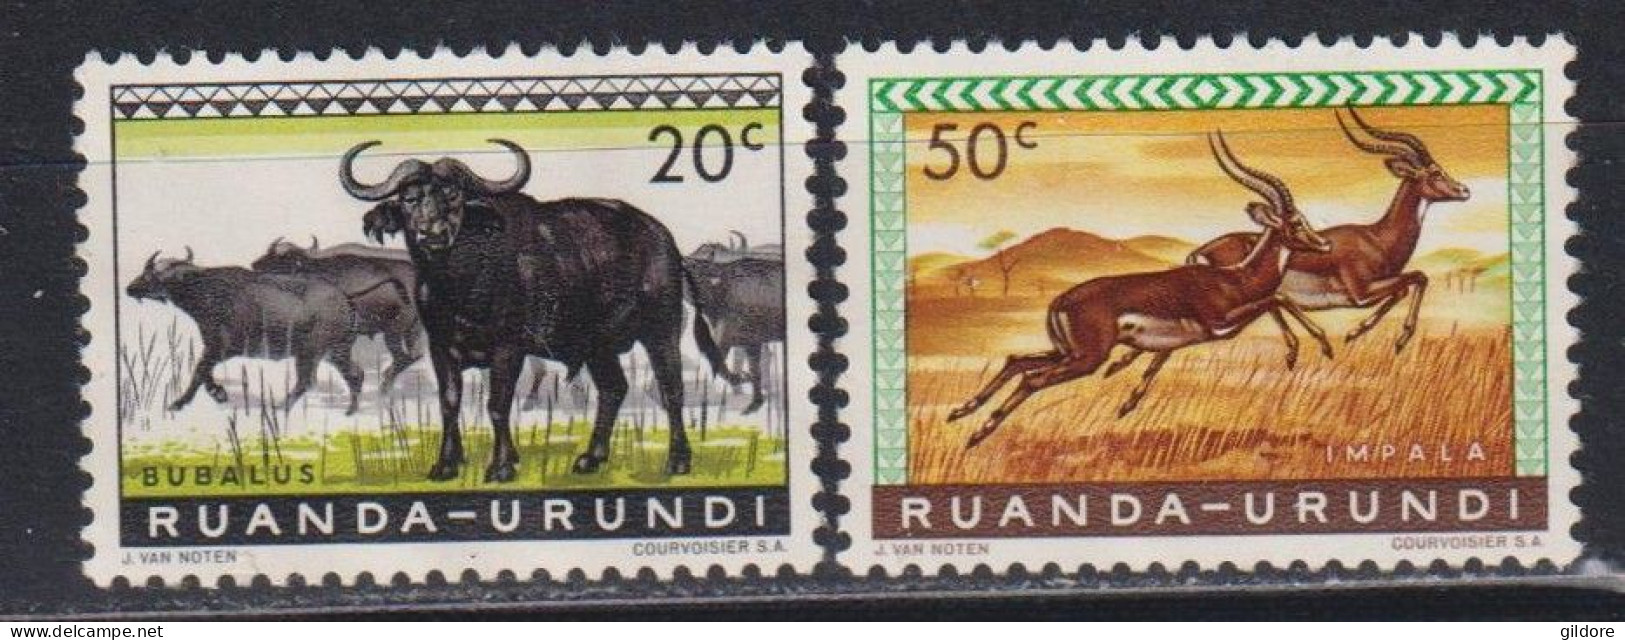 RUANDA URUNDI 1962 - 2 STAMP MNH - Nuovi